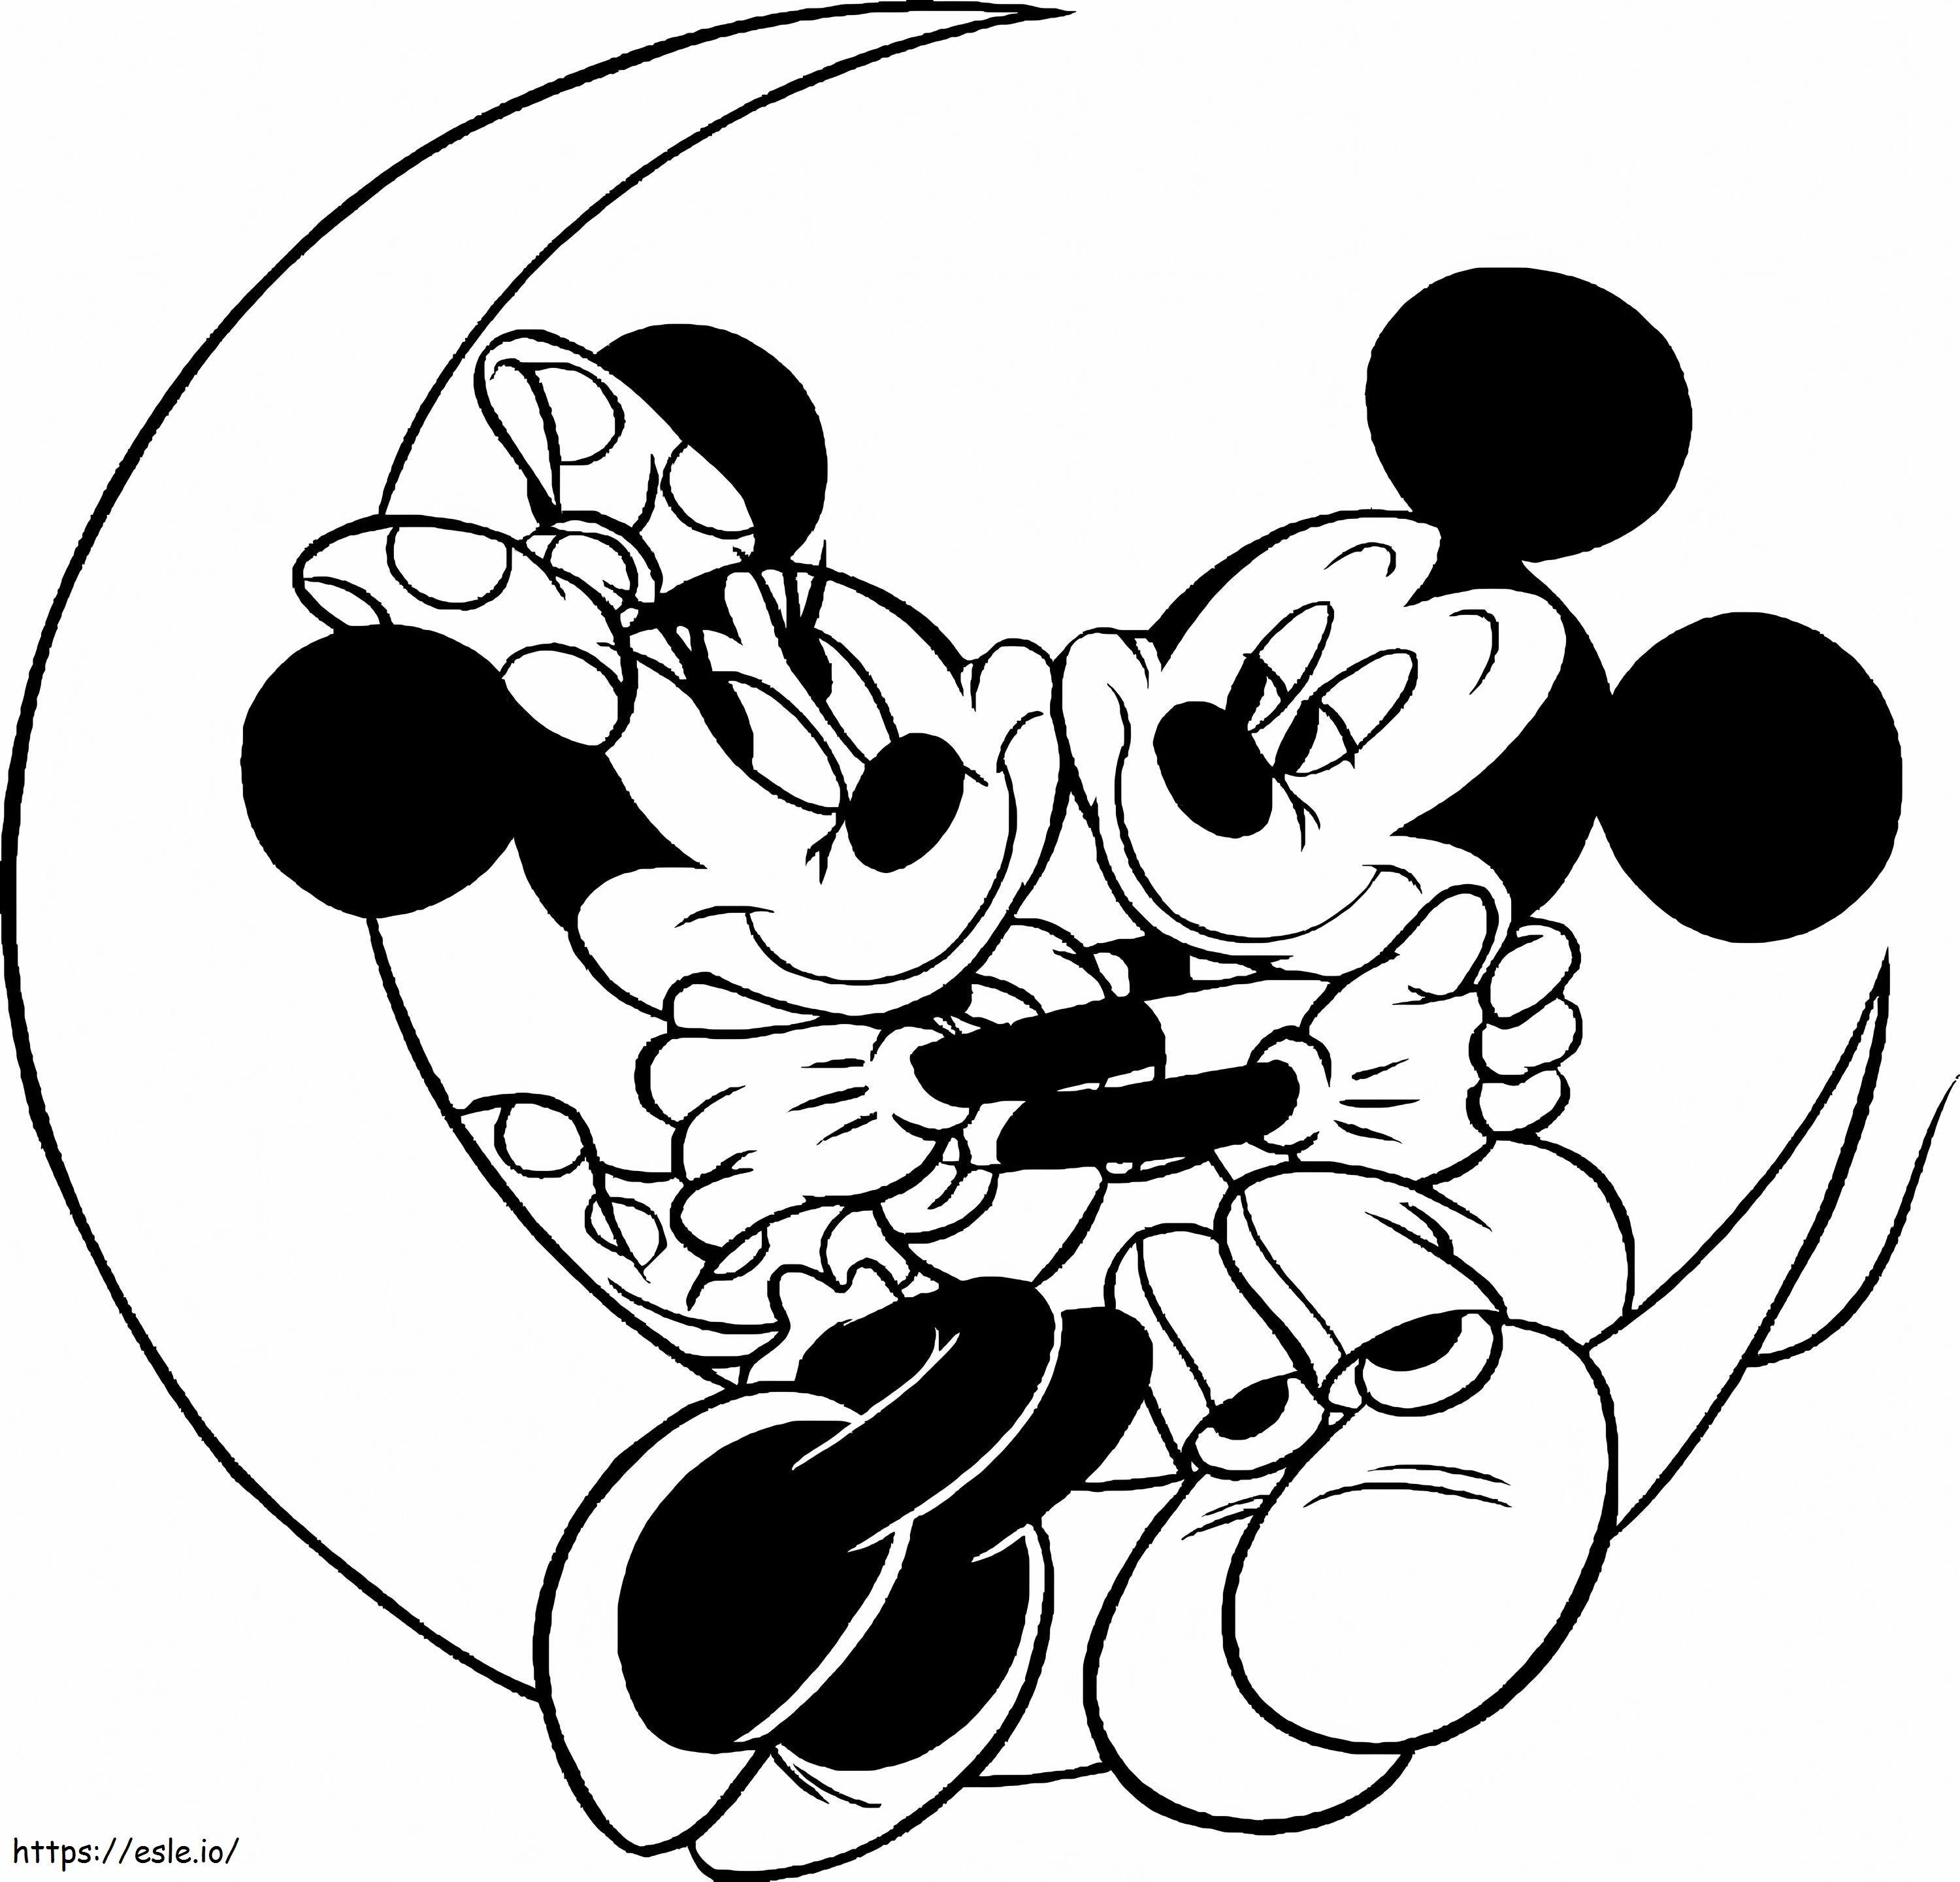 Mickey und Minnie Mouse auf dem Mond ausmalbilder